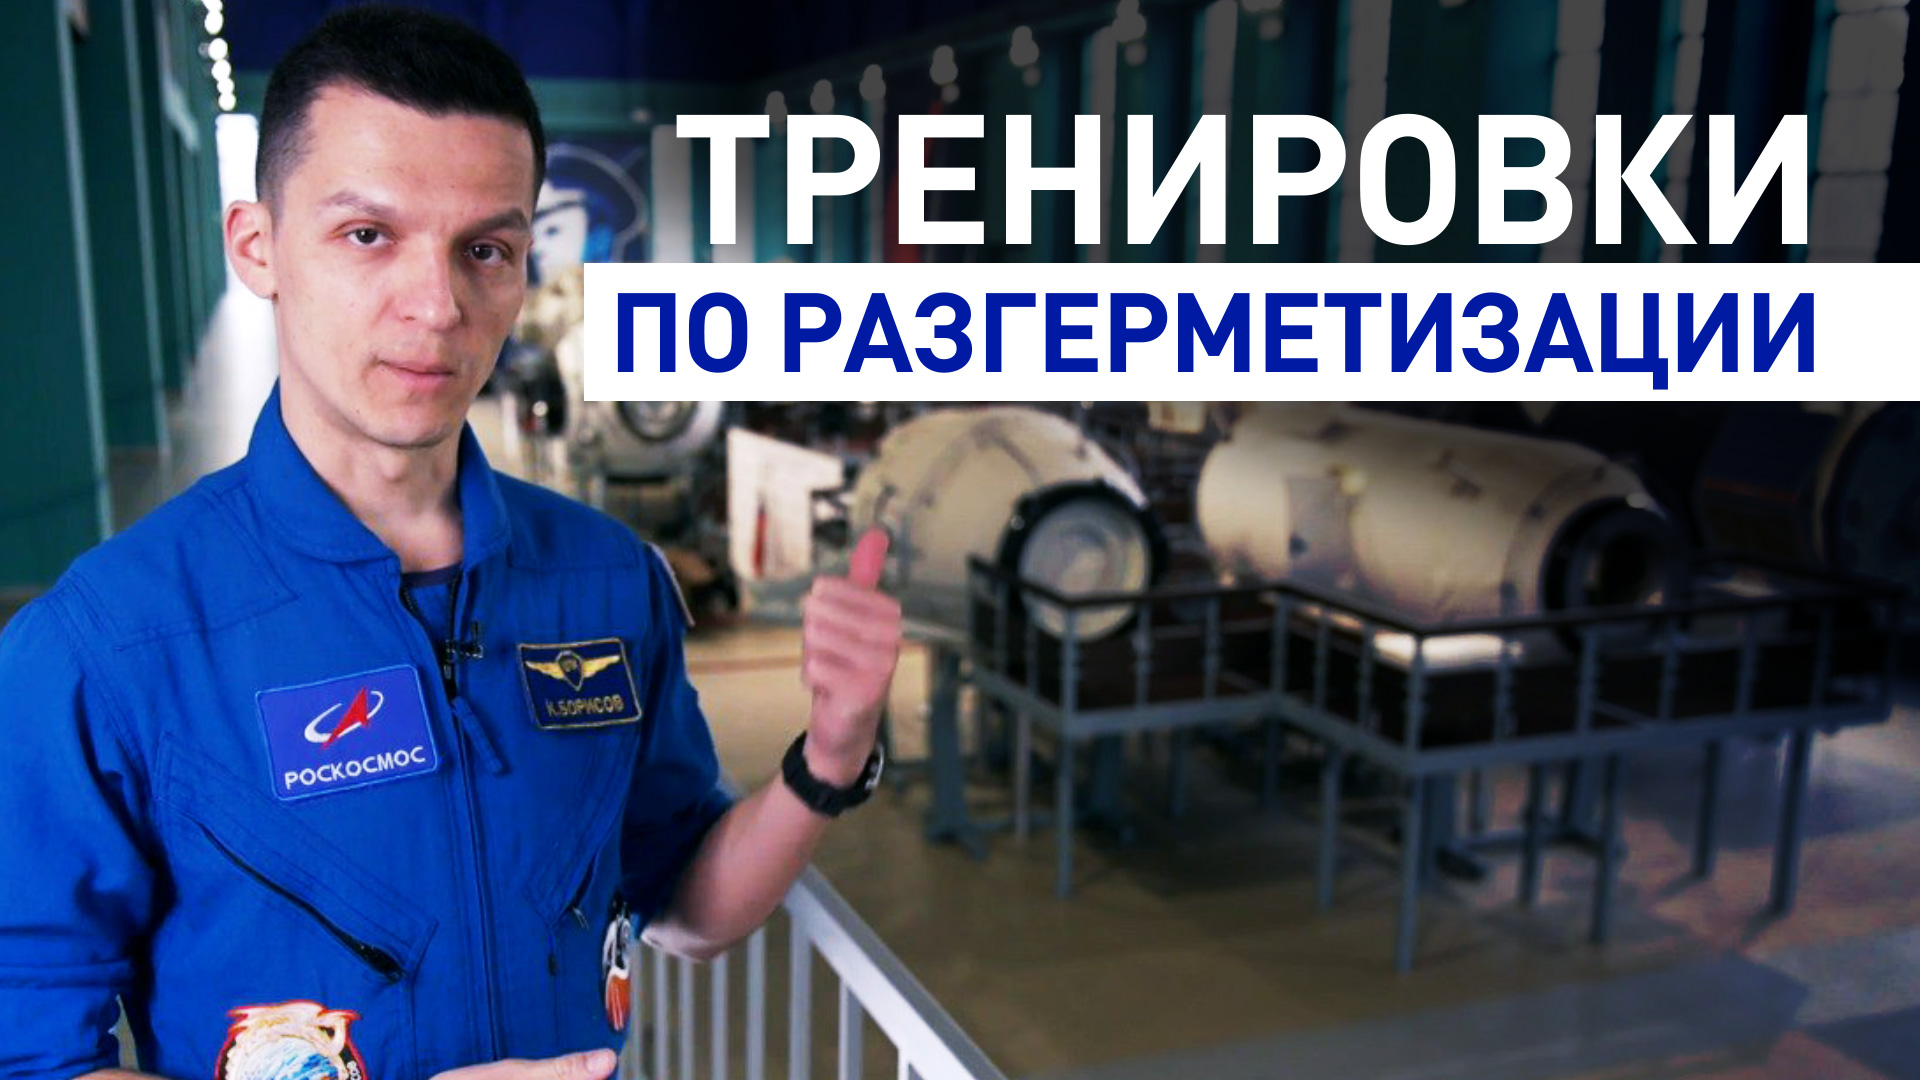 Российский космонавт показал тренировки по разгерметизации в невесомости — видео